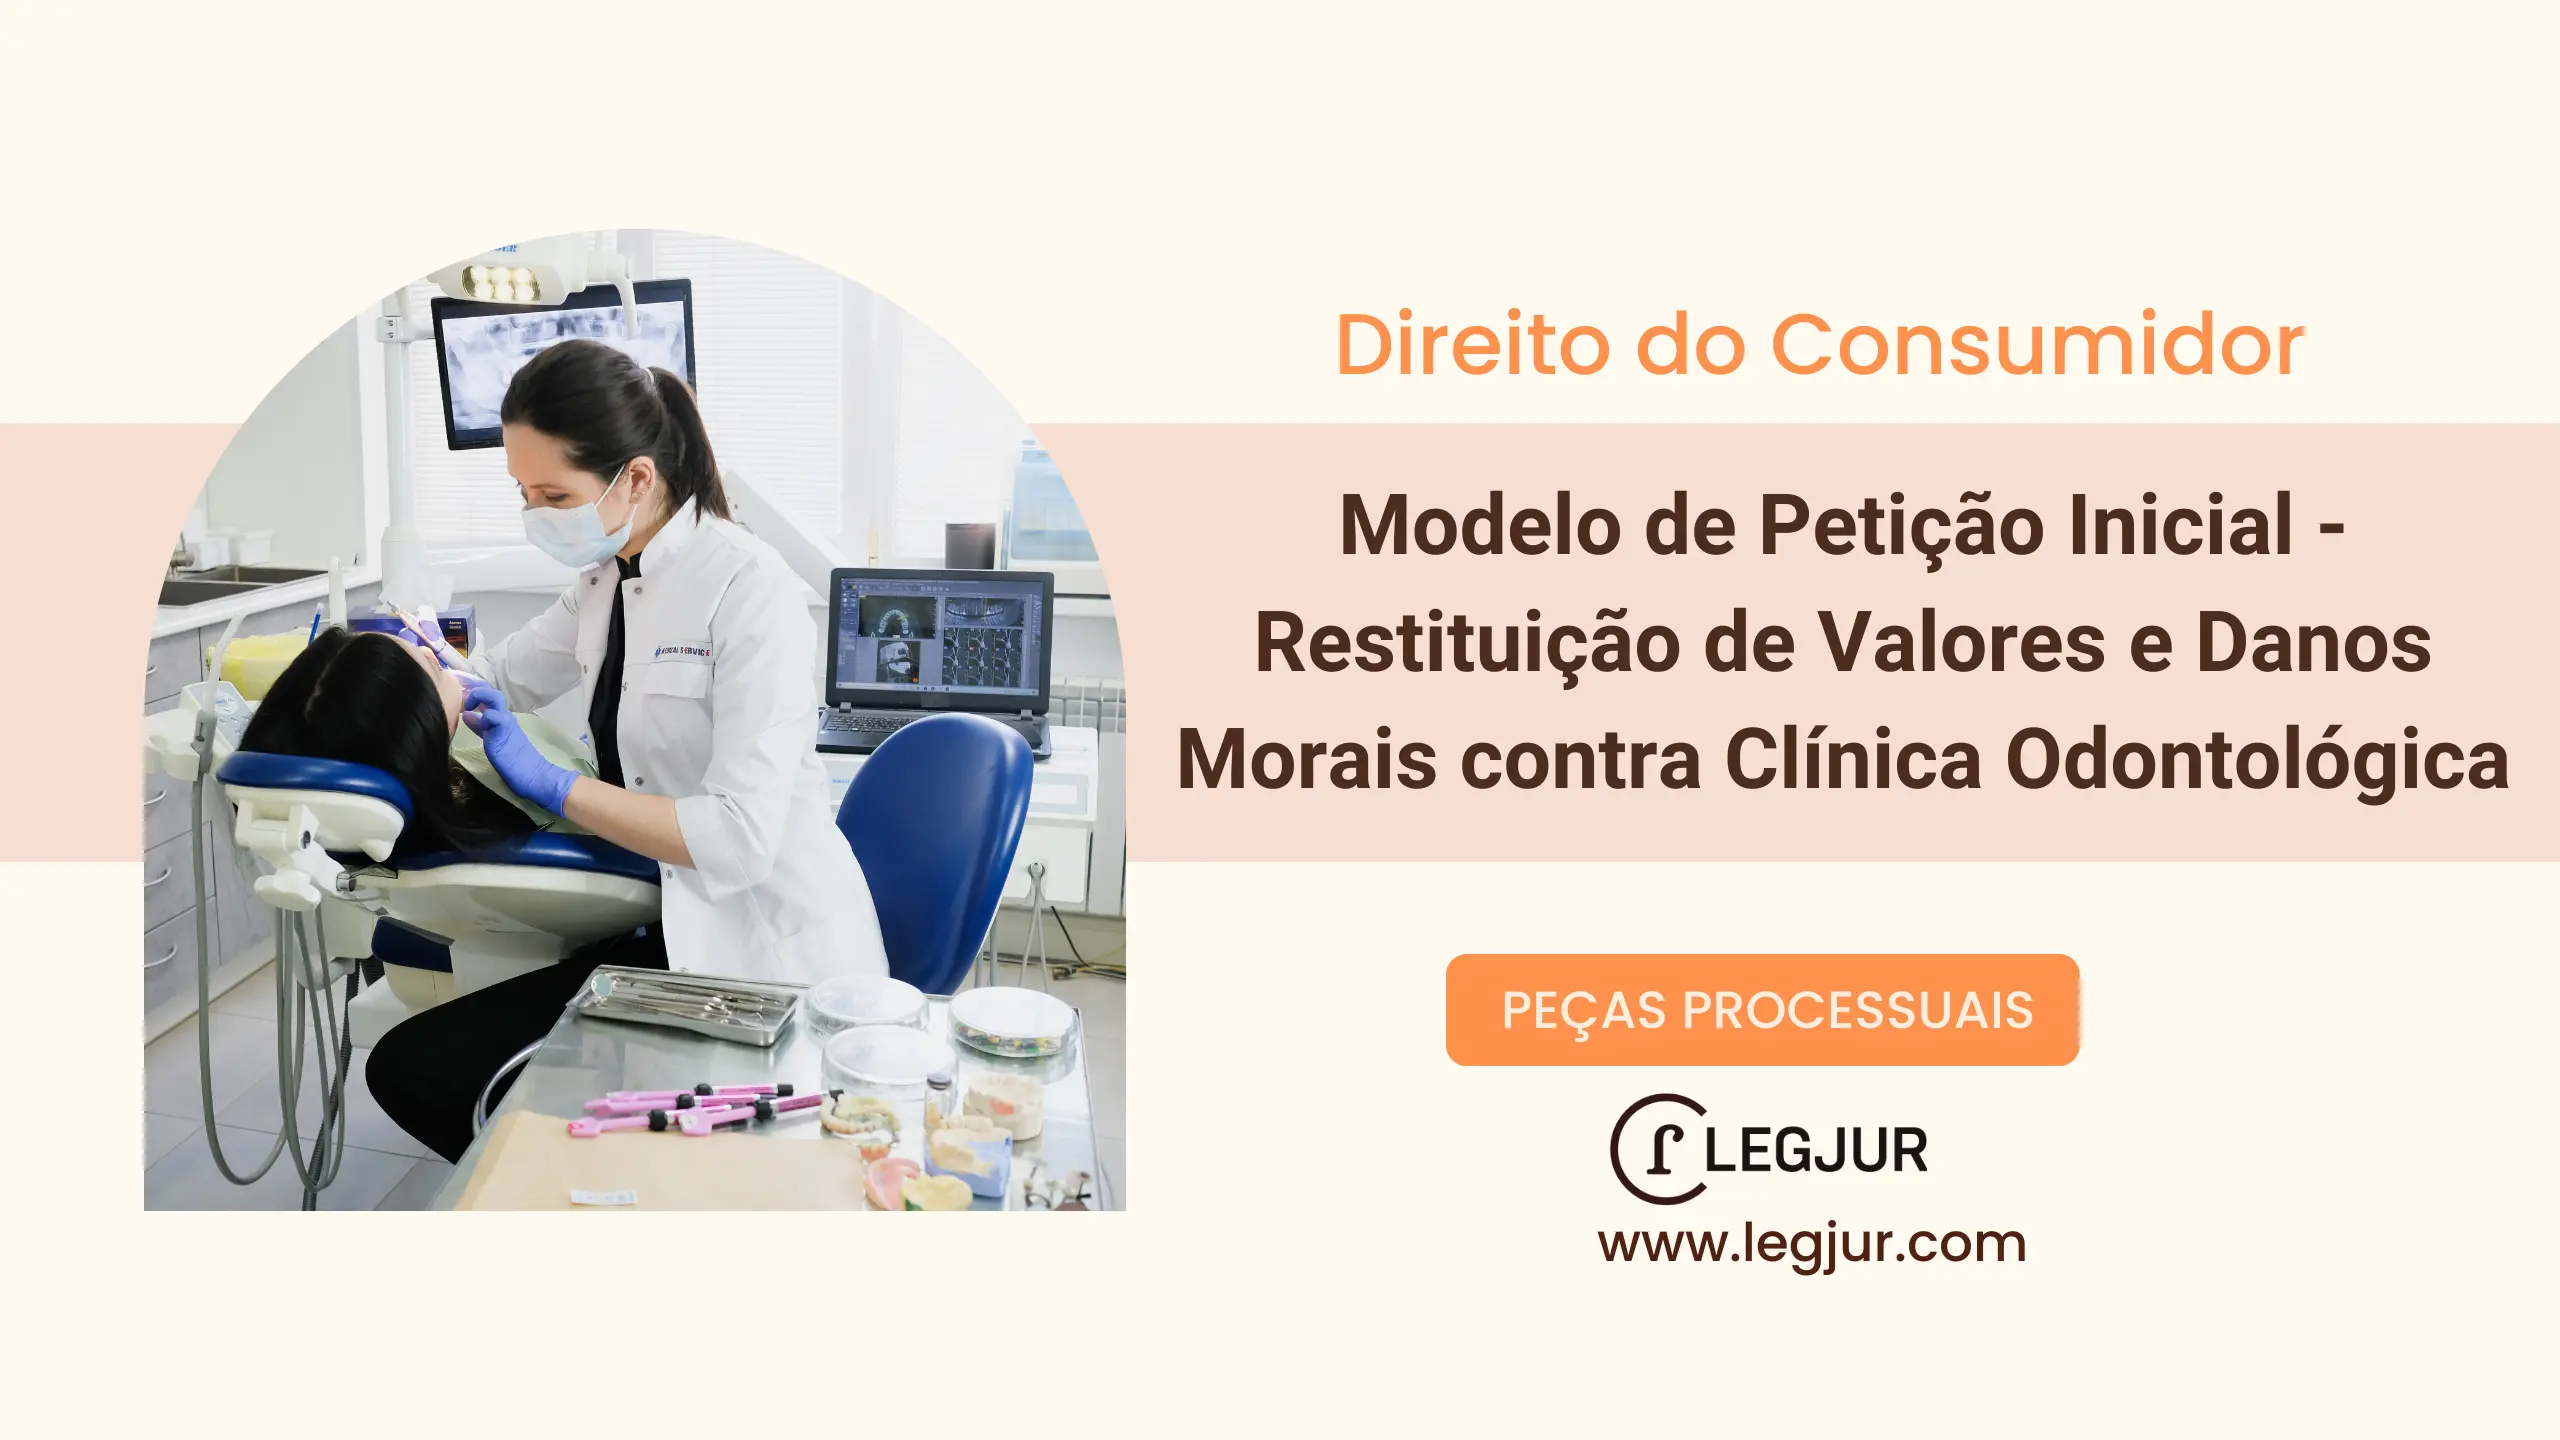 Modelo de Petição Inicial - Restituição de Valores e Danos Morais contra Clínica Odontológica